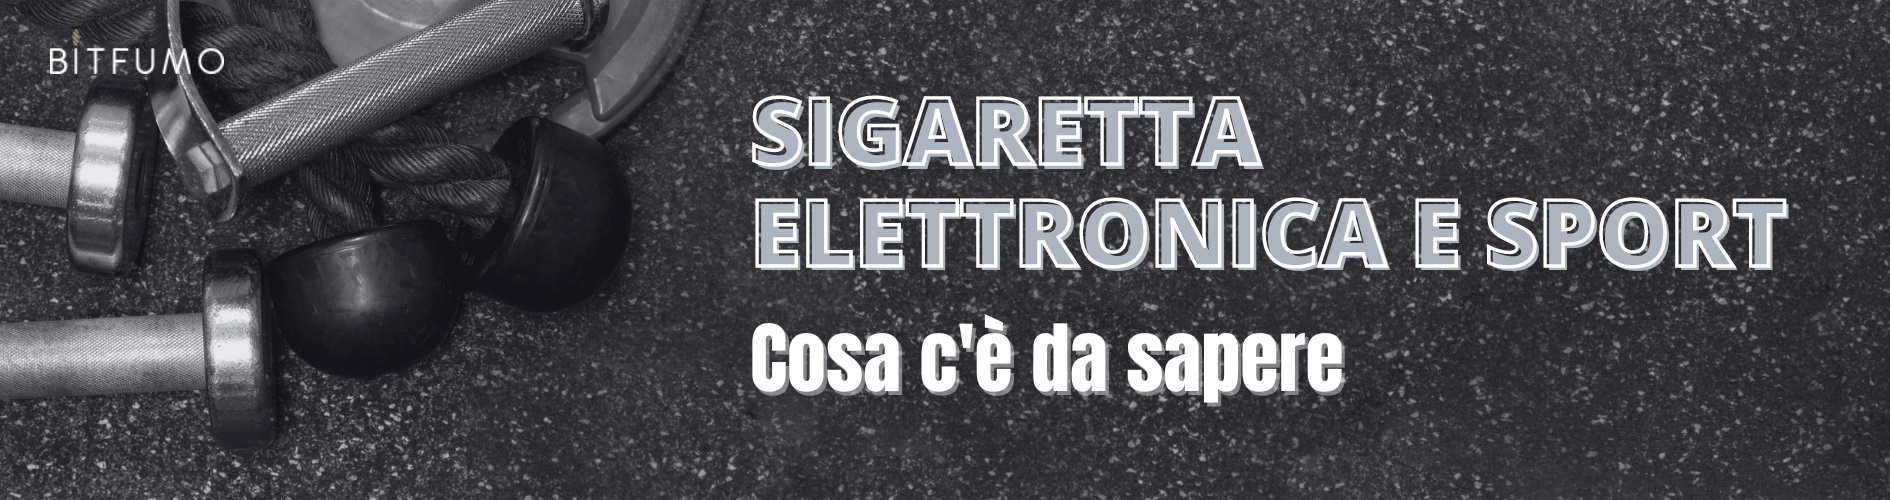 sigaretta elettronica e sport